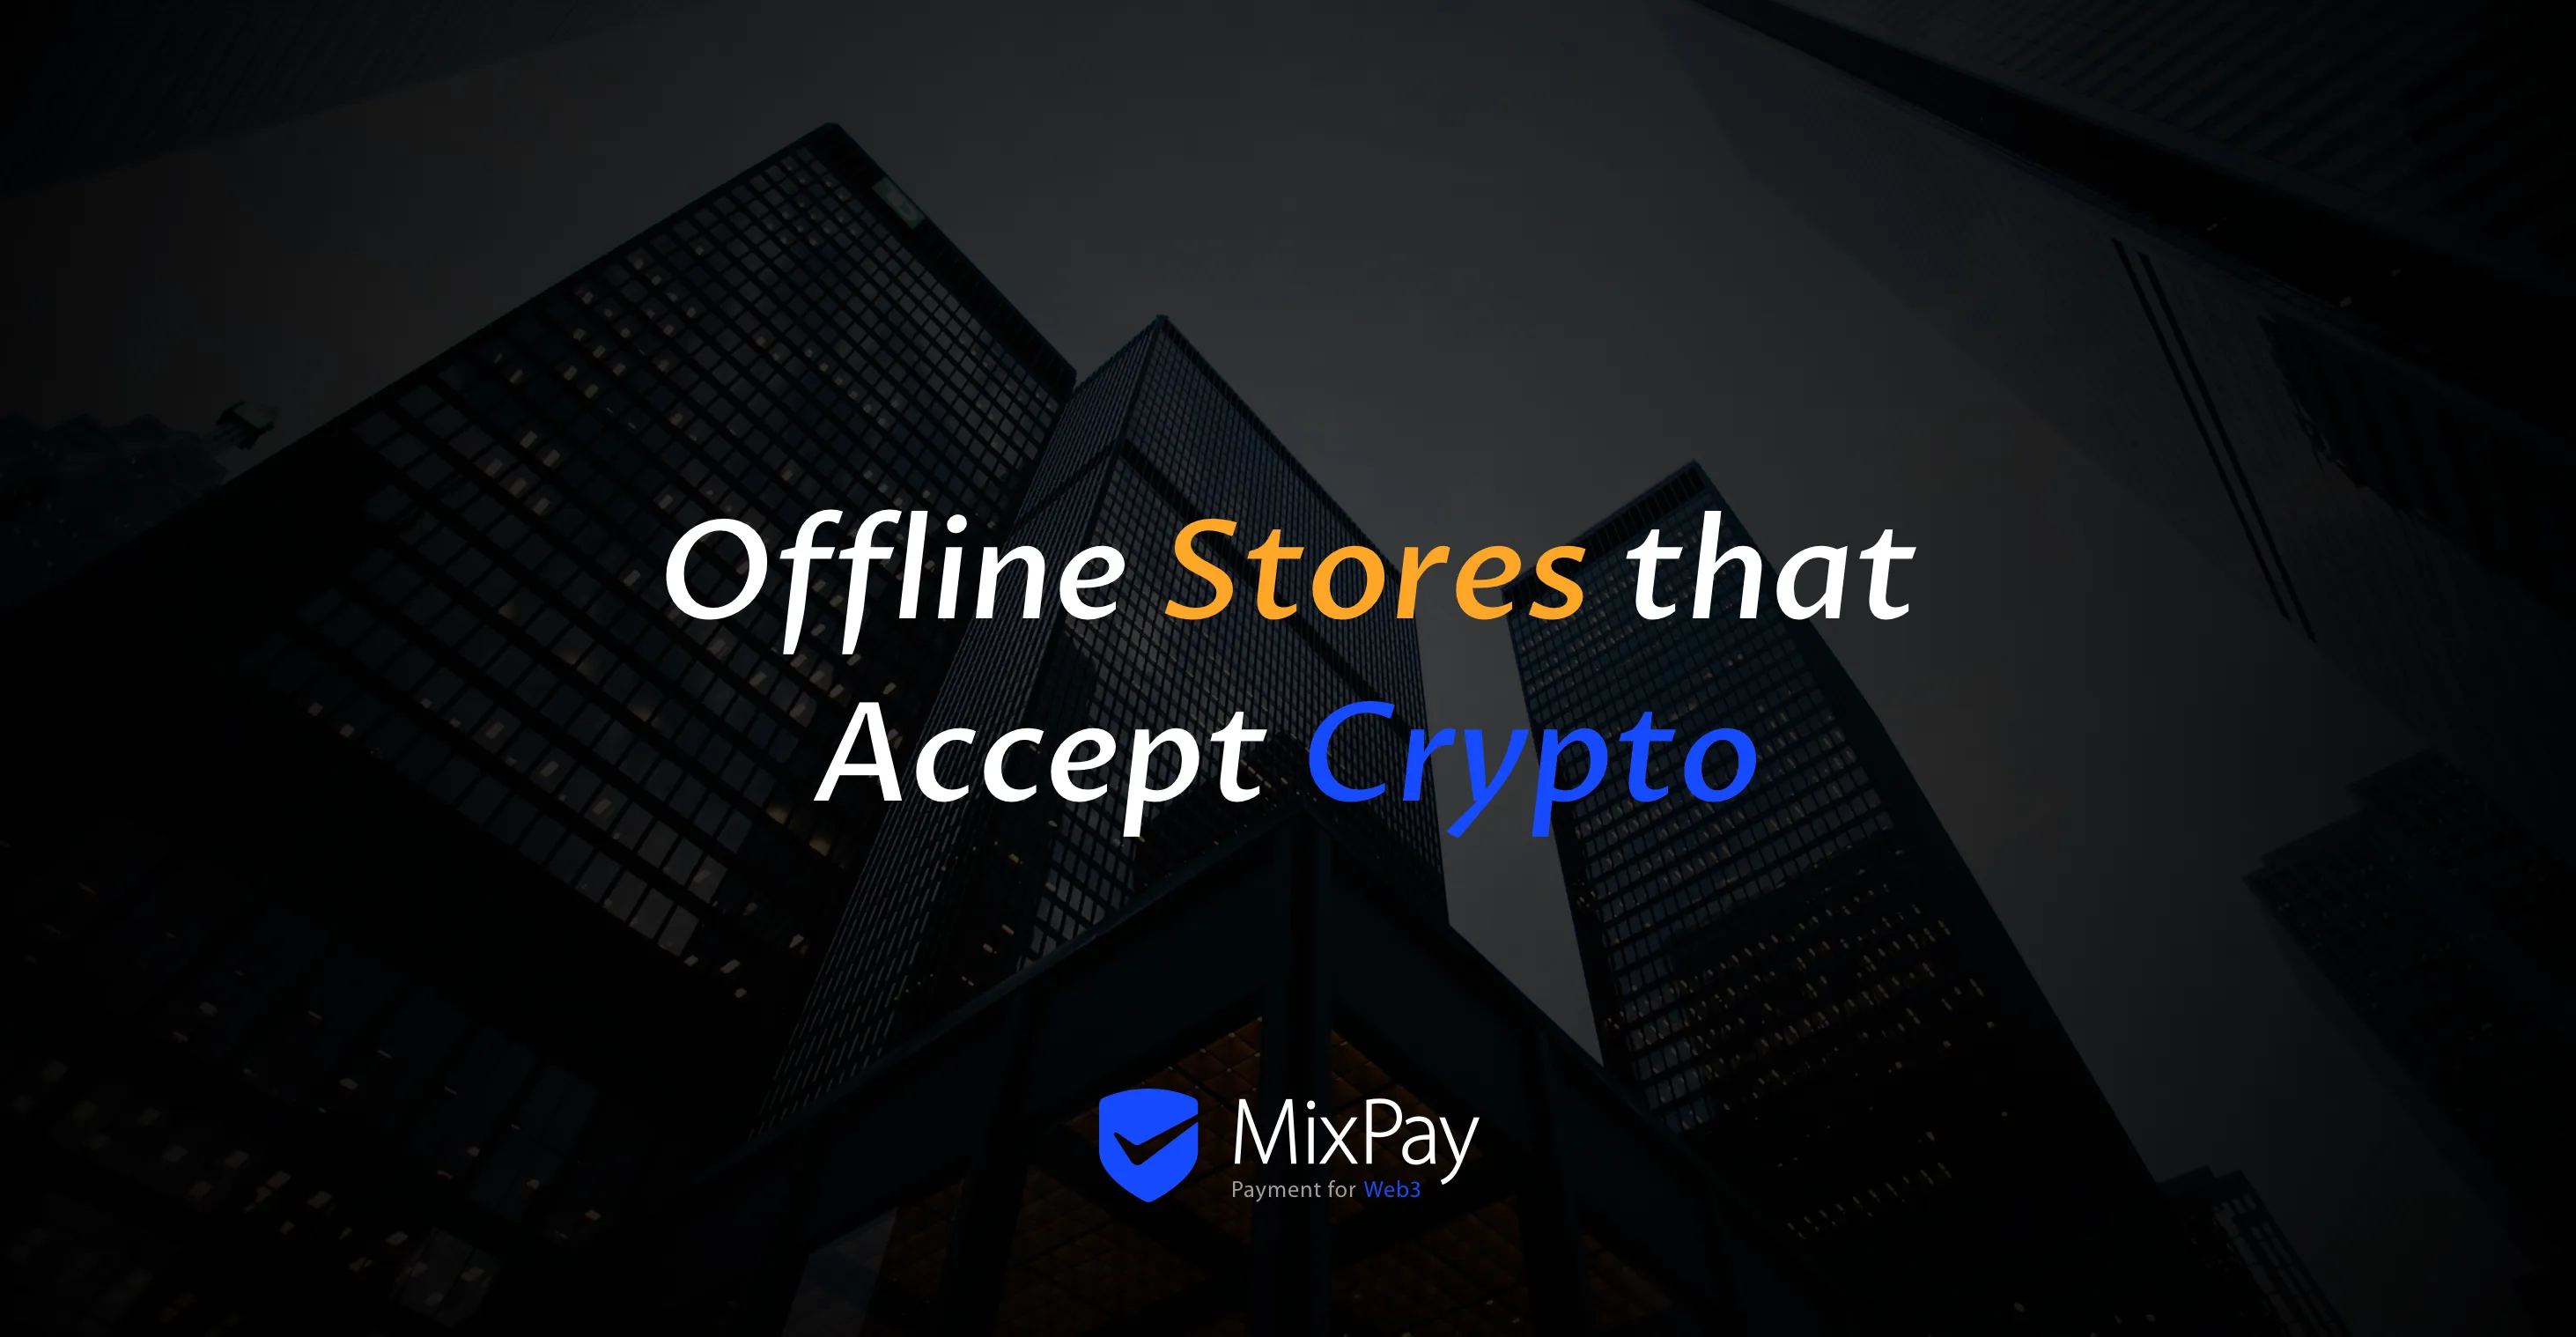 Trgovine brez povezave, ki sprejemajo kriptovalute z MixPay